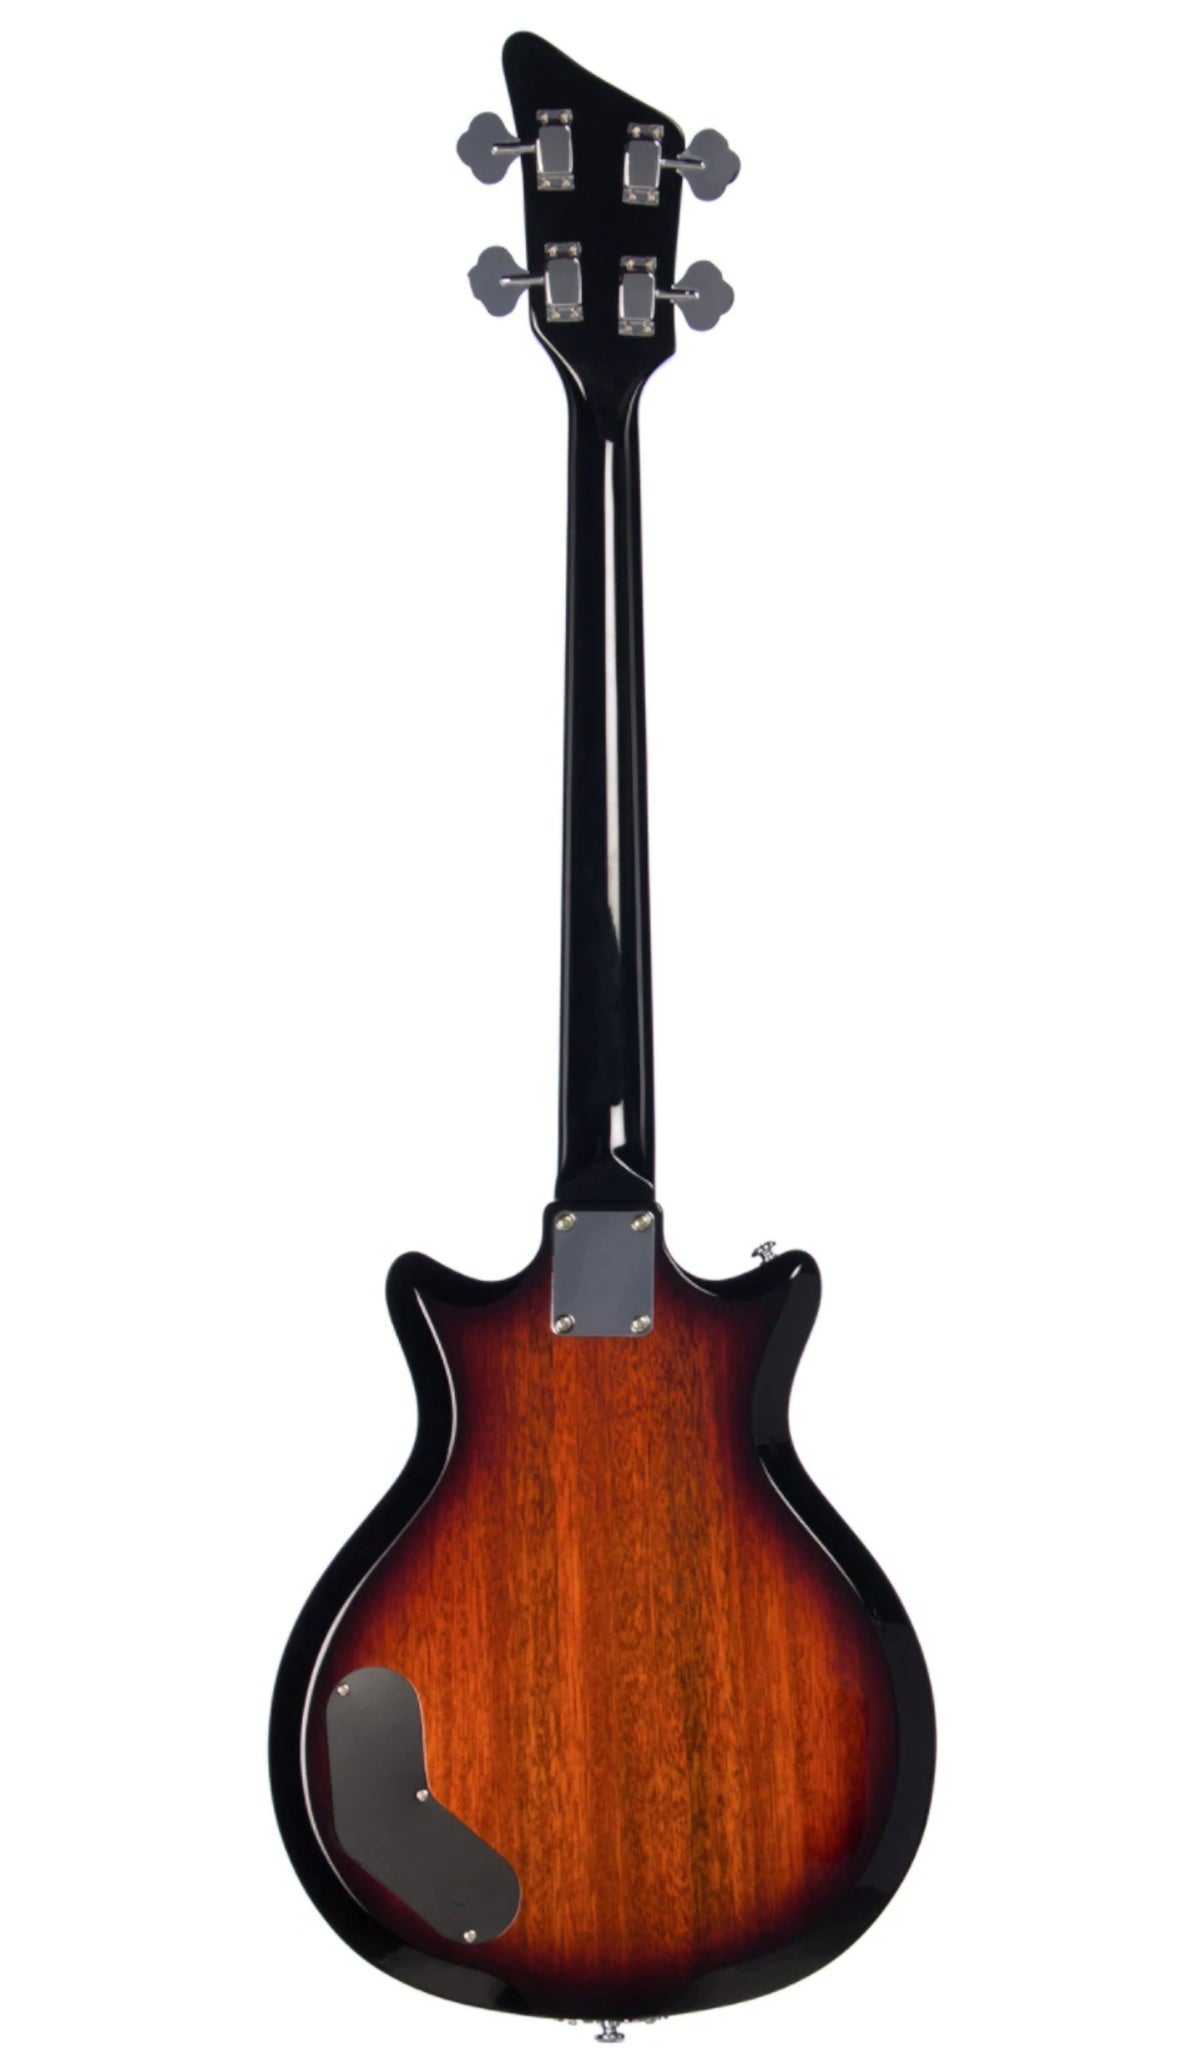 Eastwood Guitars Airline Pocket Bass Sunburst #color_sunburst